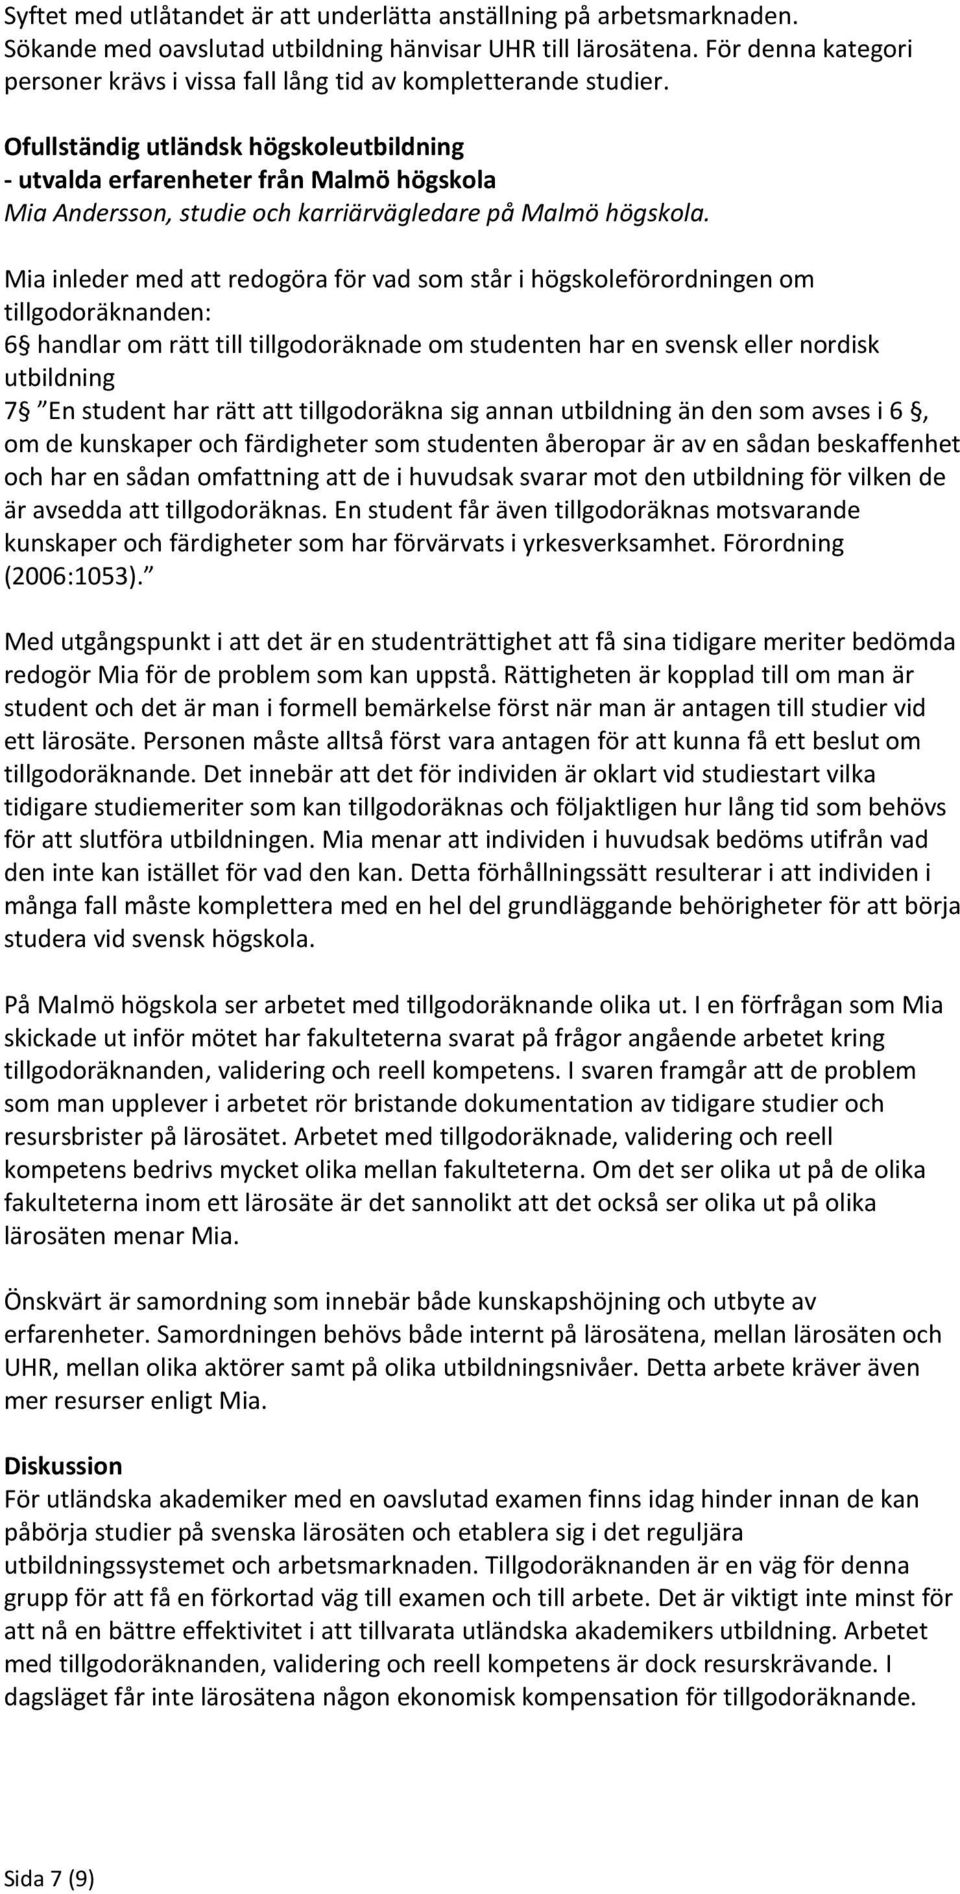 Ofullständig utländsk högskoleutbildning - utvalda erfarenheter från Malmö högskola Mia Andersson, studie och karriärvägledare på Malmö högskola.